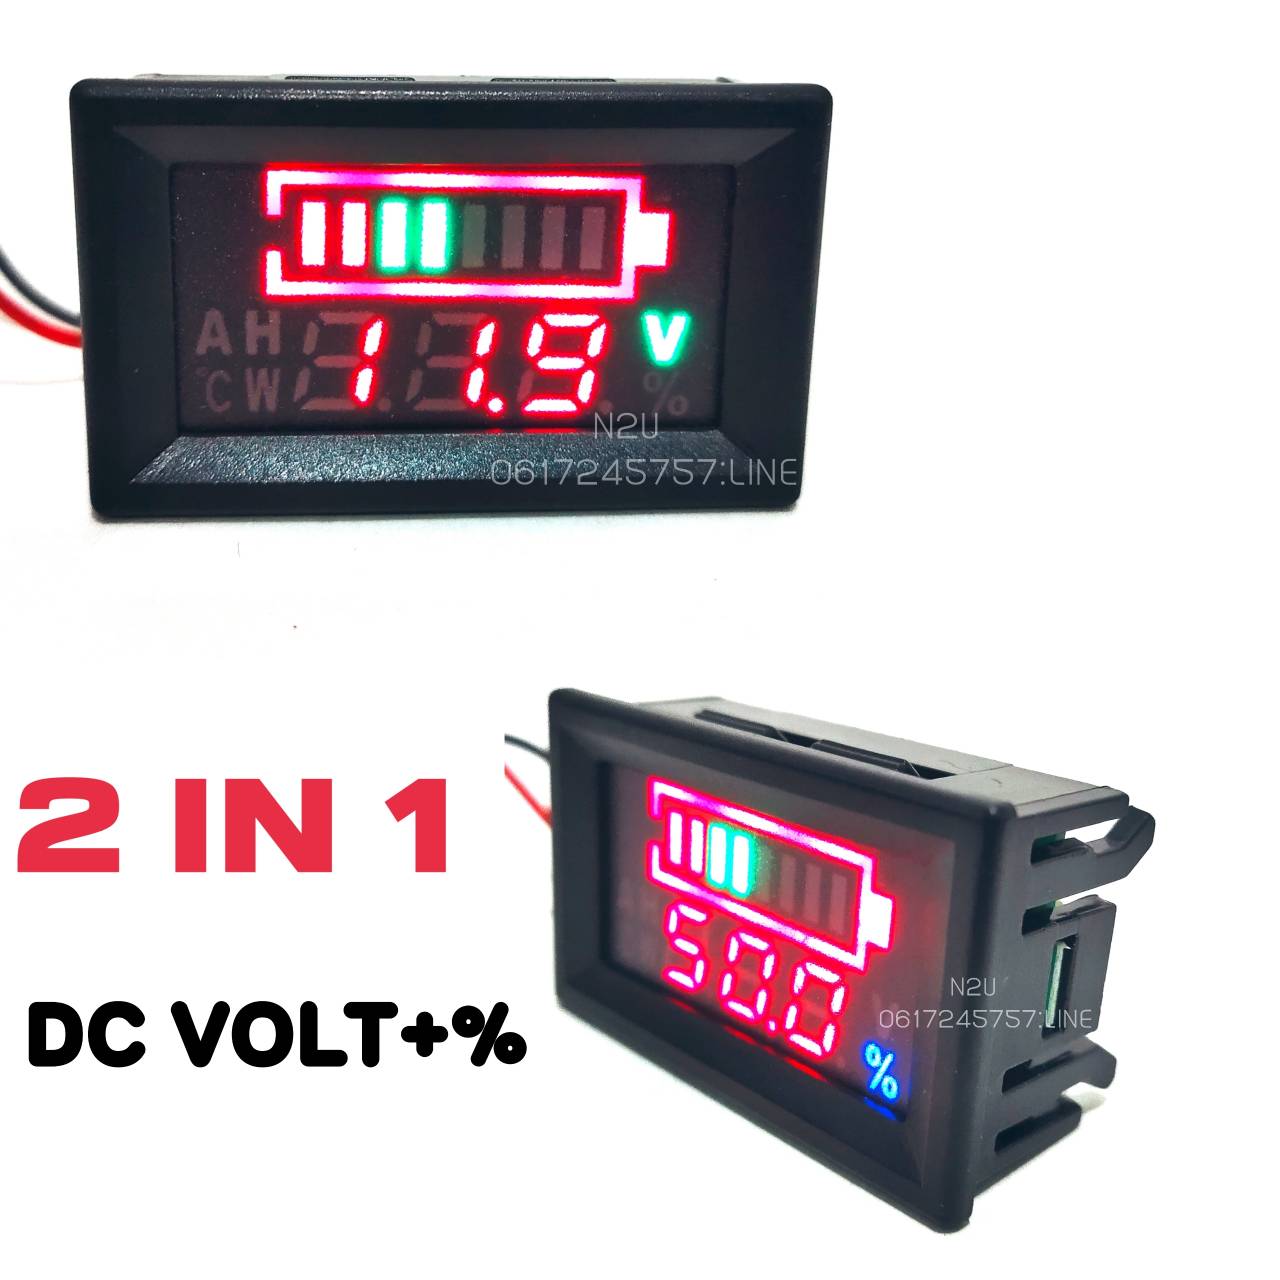 2IN1 12VDC DC VOLT+% วัดโวลท์ภายใน วัดแบต รถยนต์มิเตอร์ วัดปริมาณแบตเตอรี่ ไฟสีแดง ต่อกับแบตเตอรี่ 12v เท่านั้น